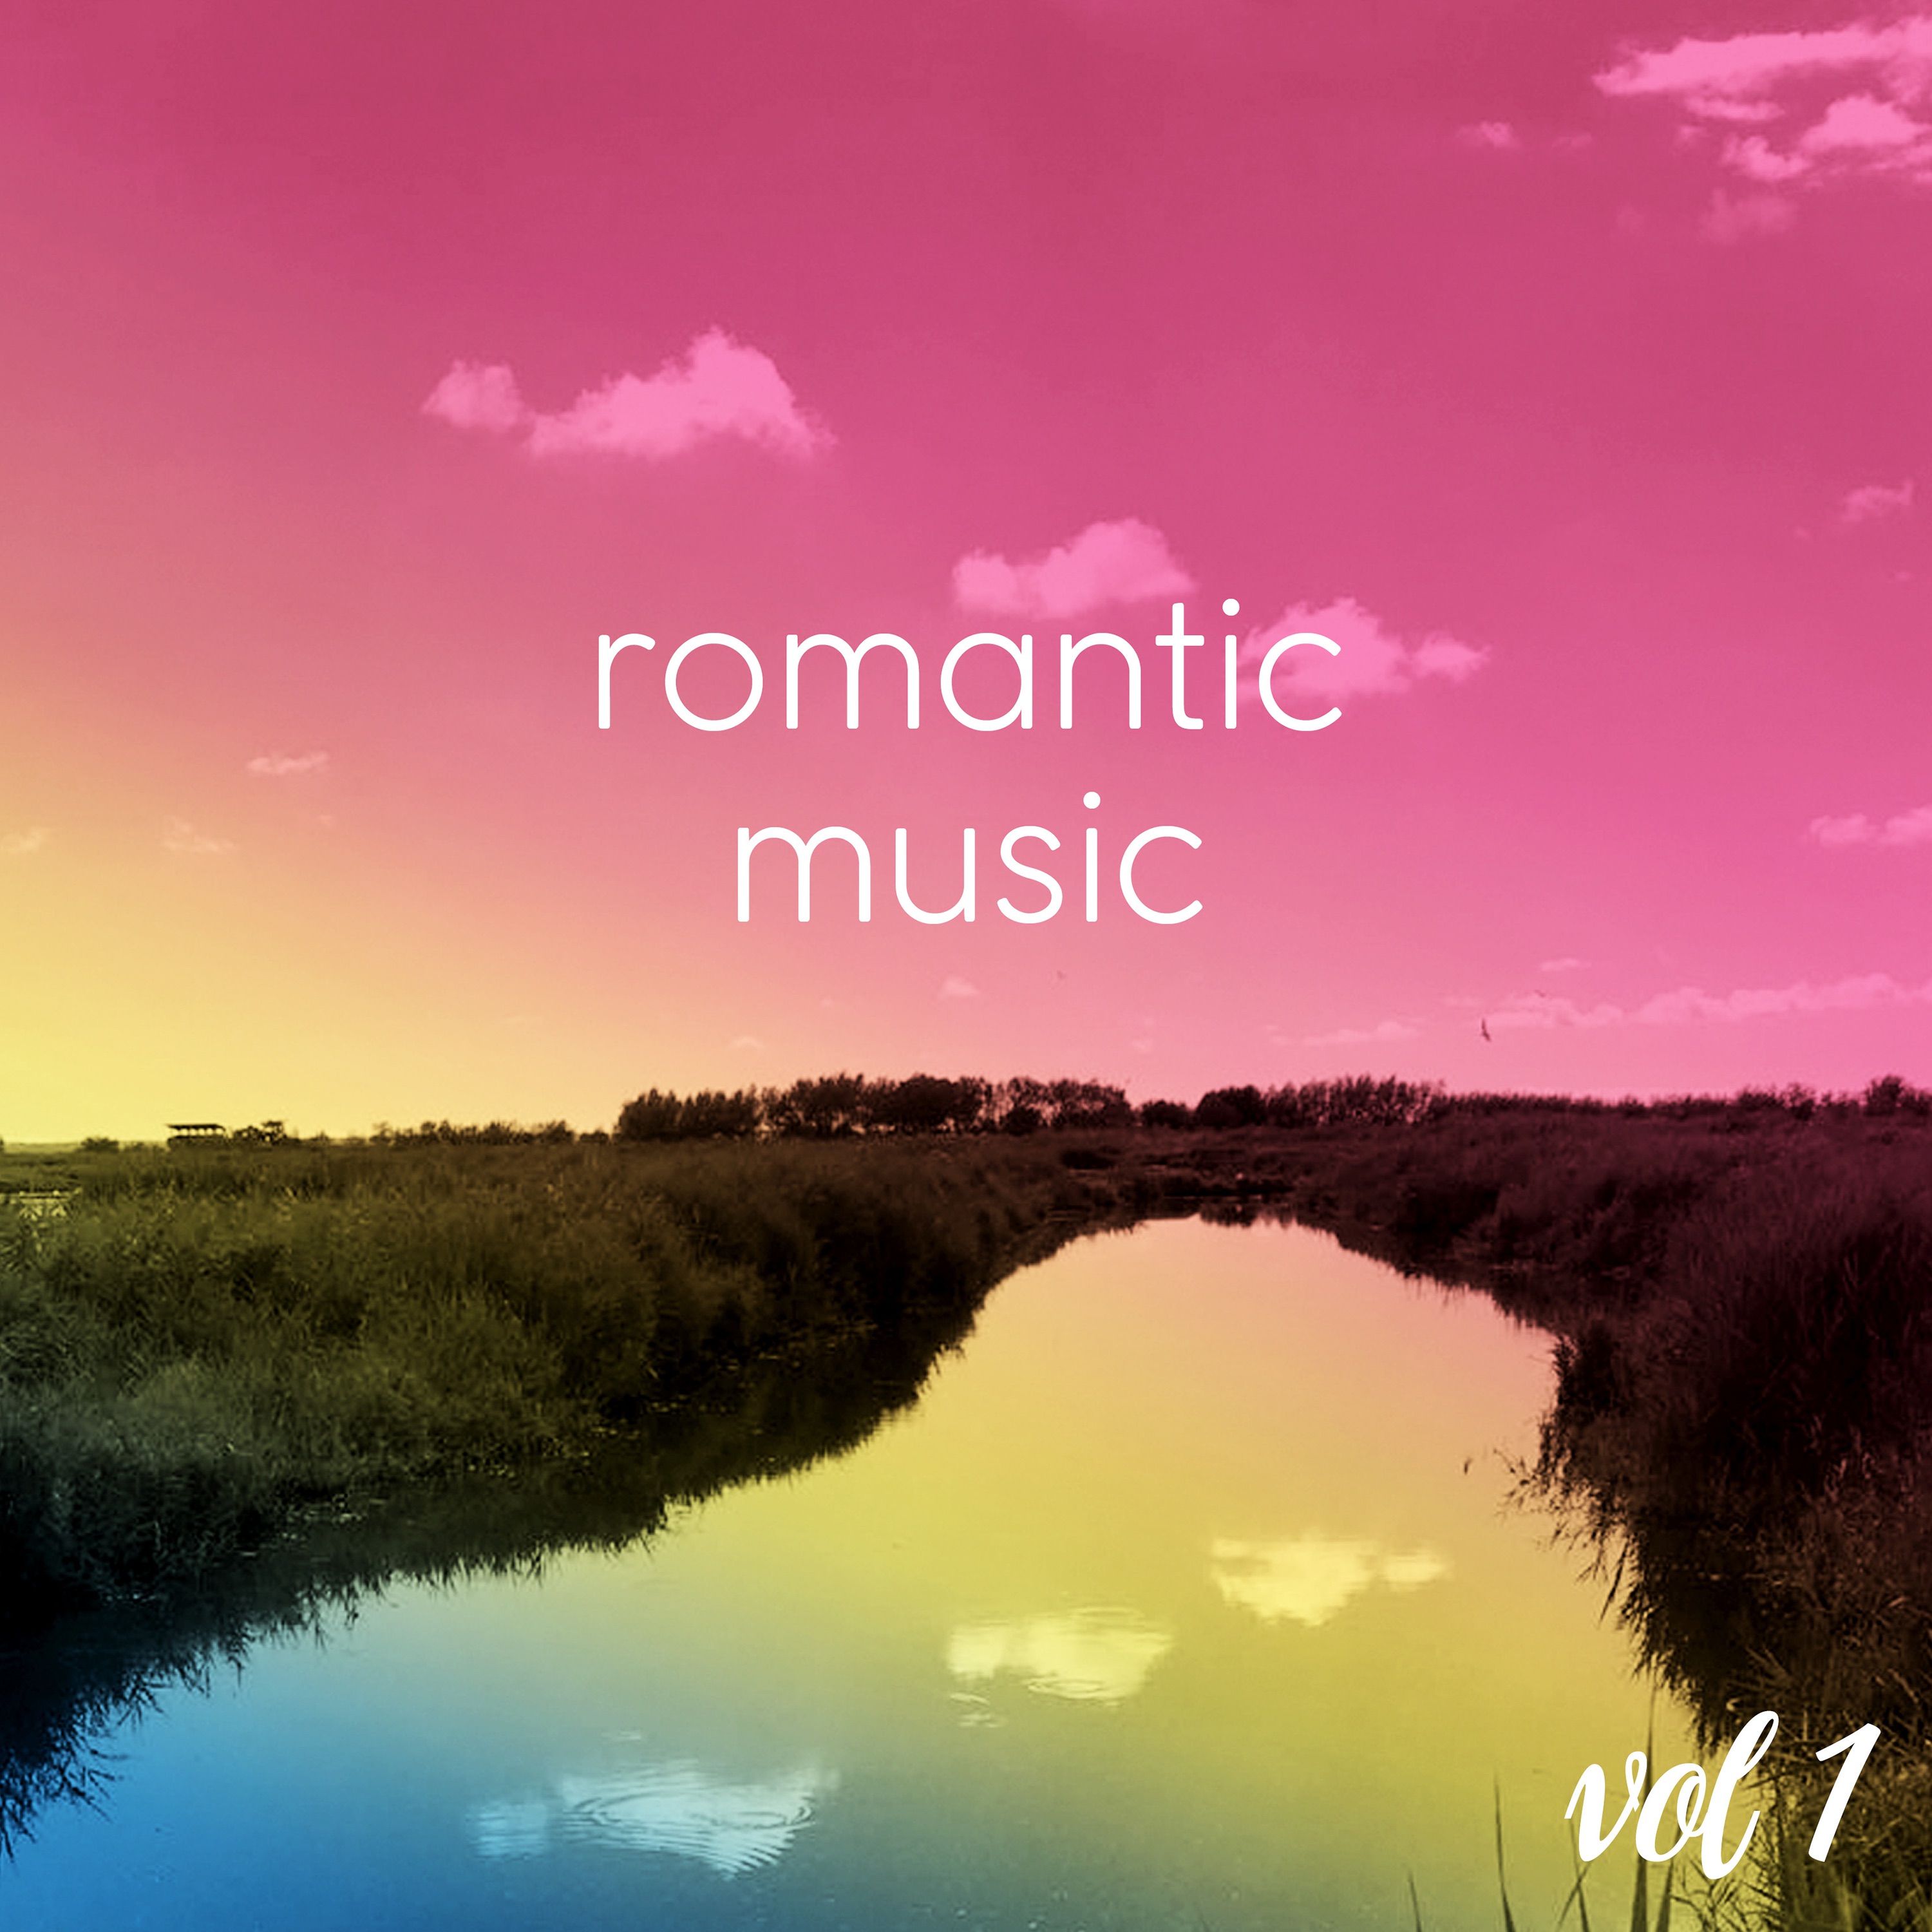 Romance music